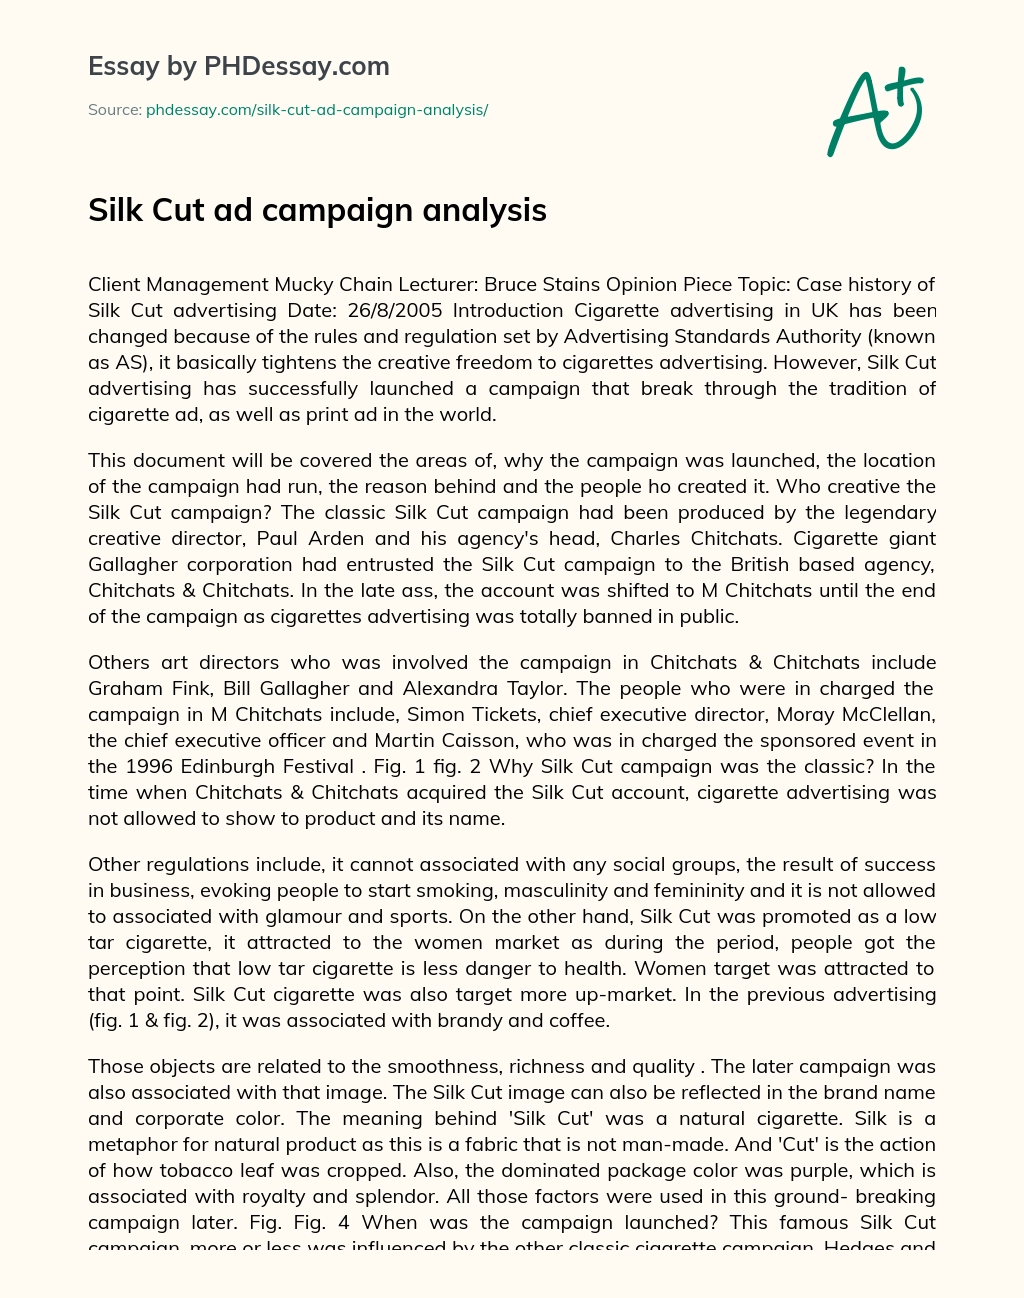 Silk Cut ad campaign analysis essay